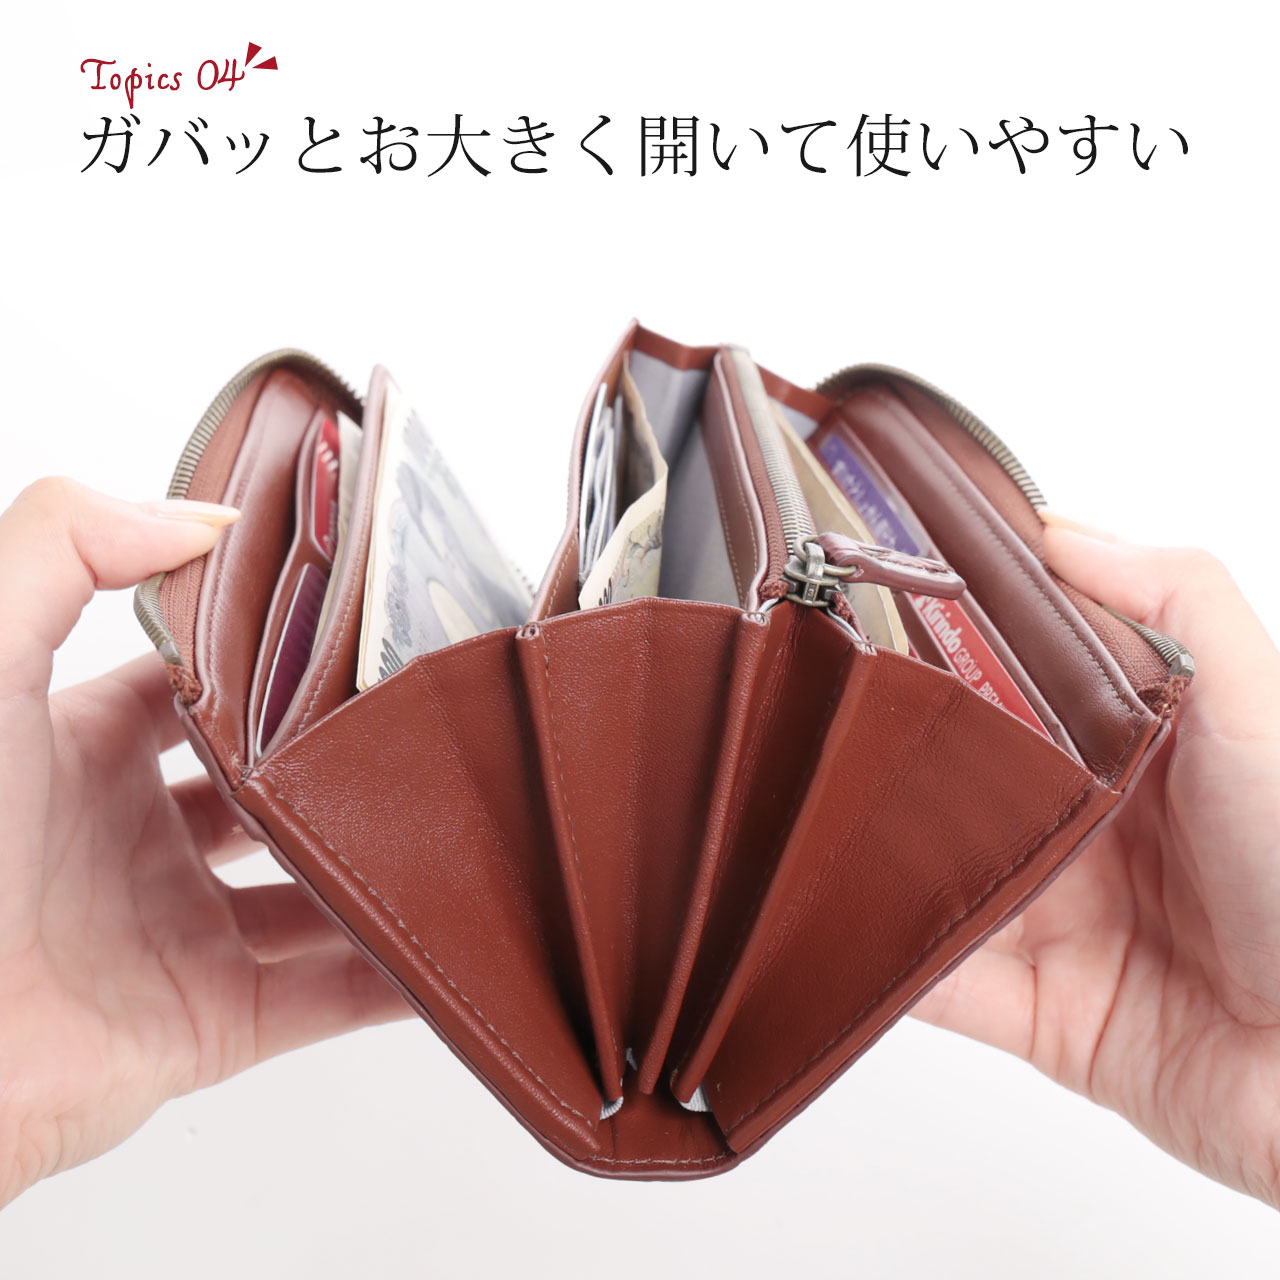 大きく開く 使いやすい 機能的 財布